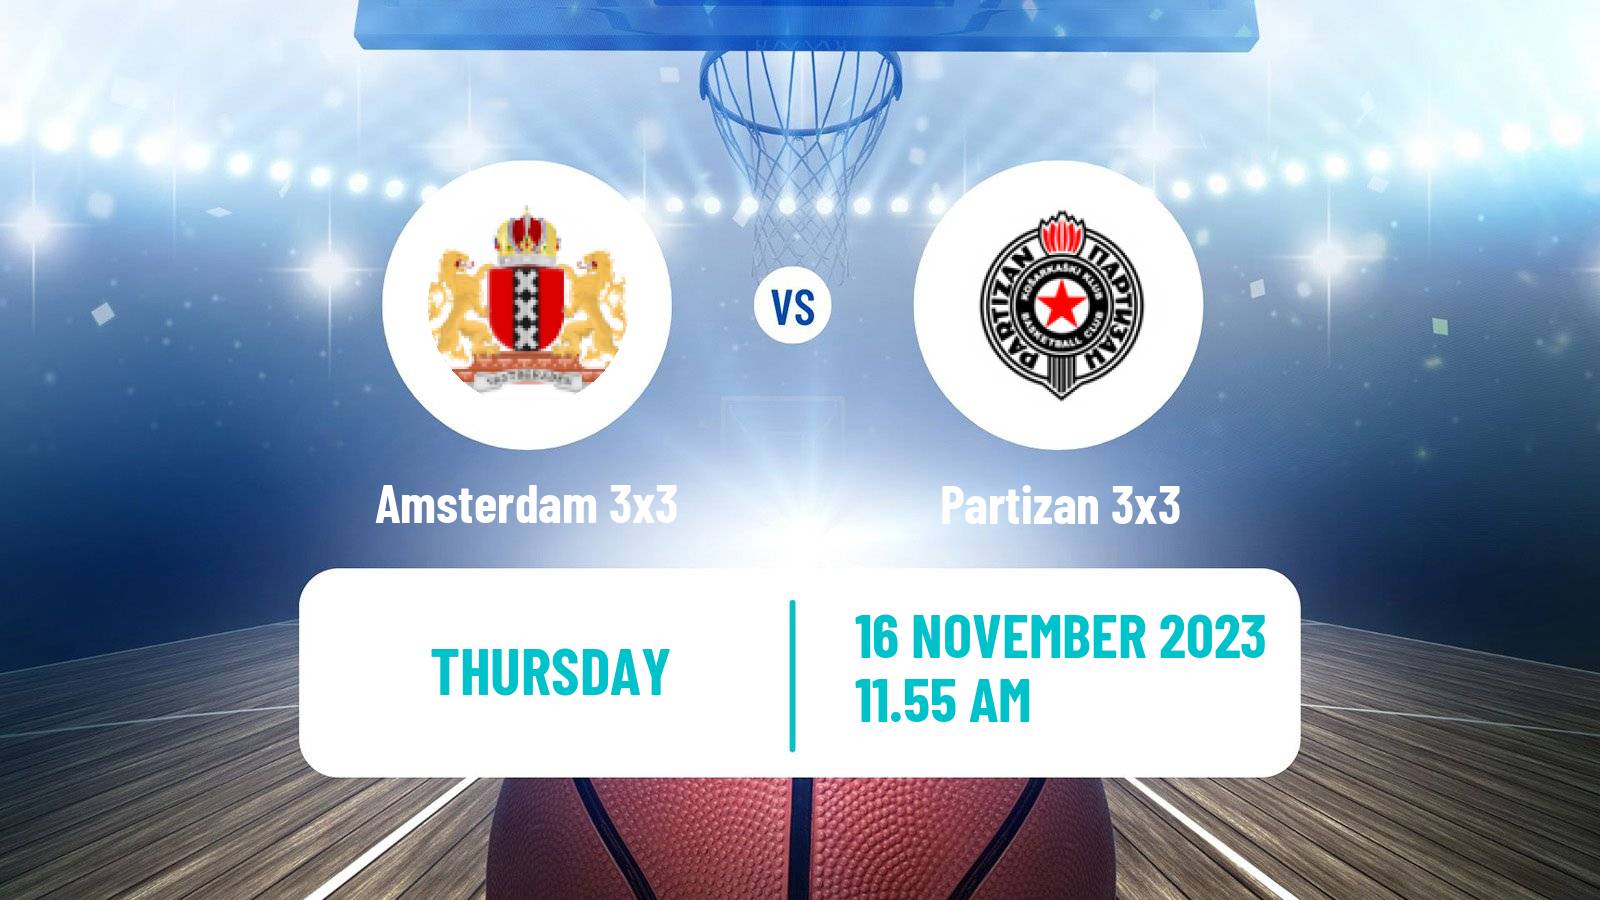 Basketball World Tour Manama 3x3 Amsterdam 3x3 - Partizan 3x3